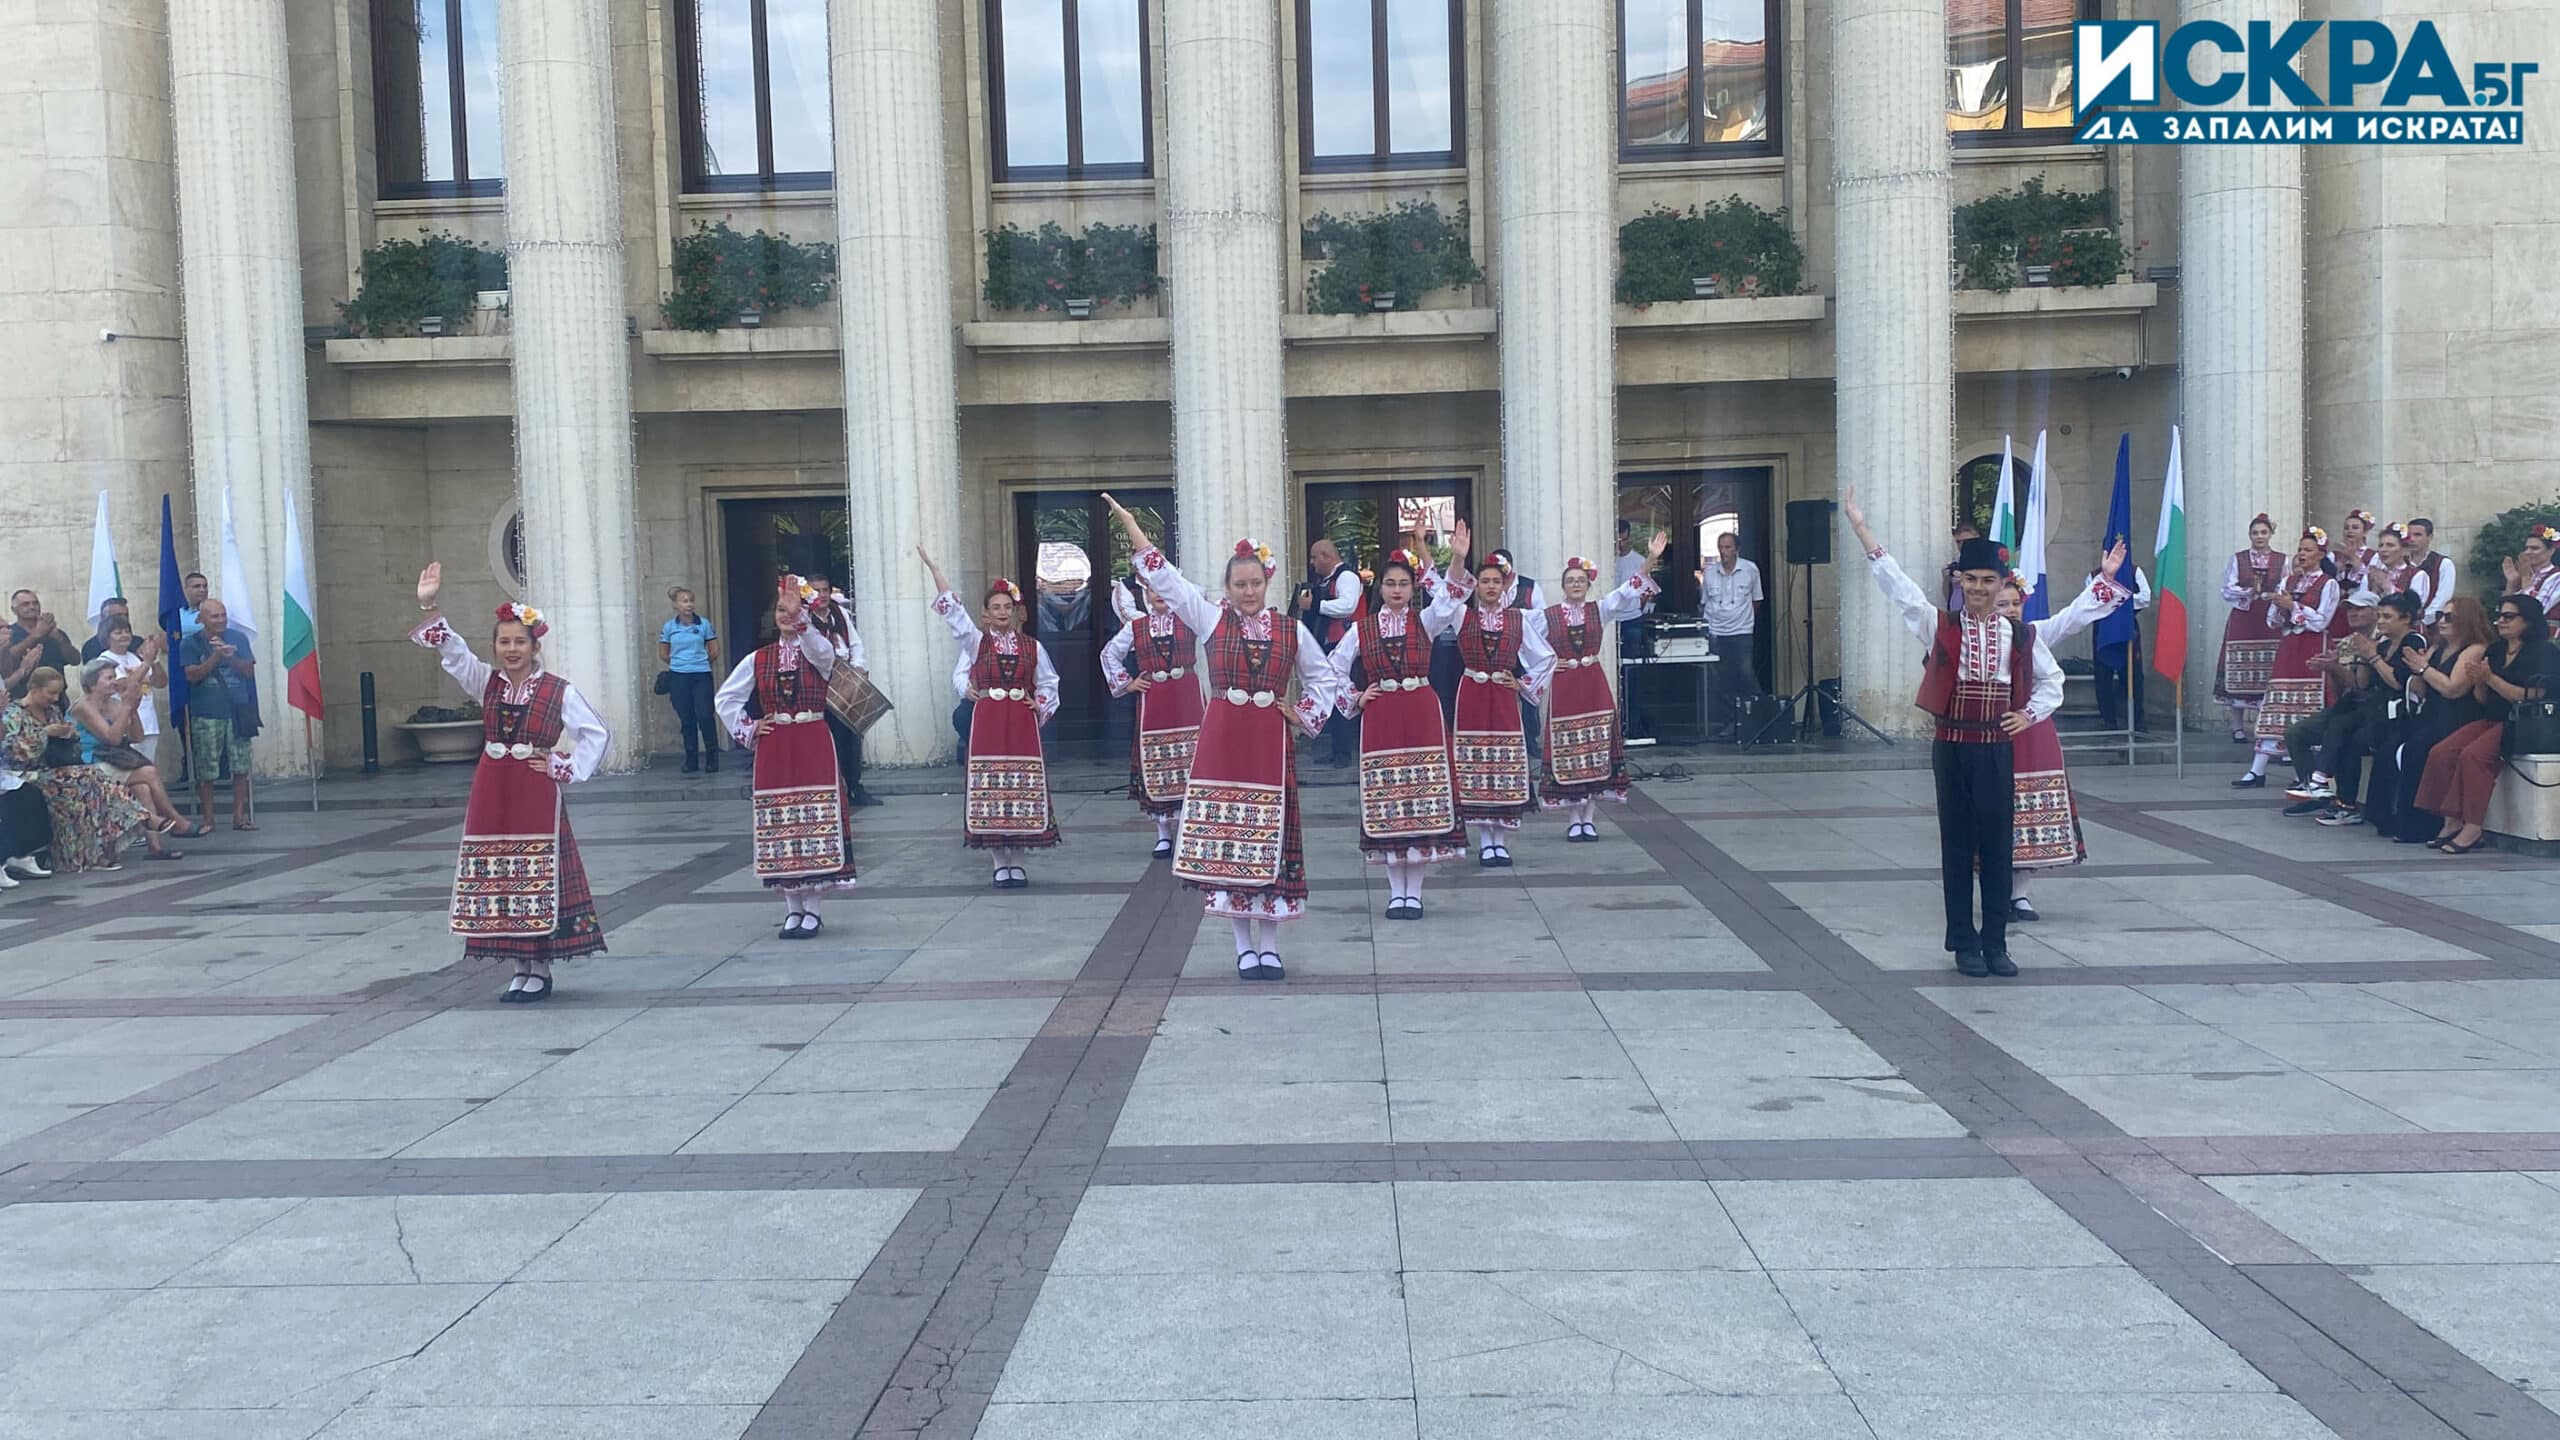 Празник Снимка Искра бг
Гостите и жителите на Бургас се насладиха